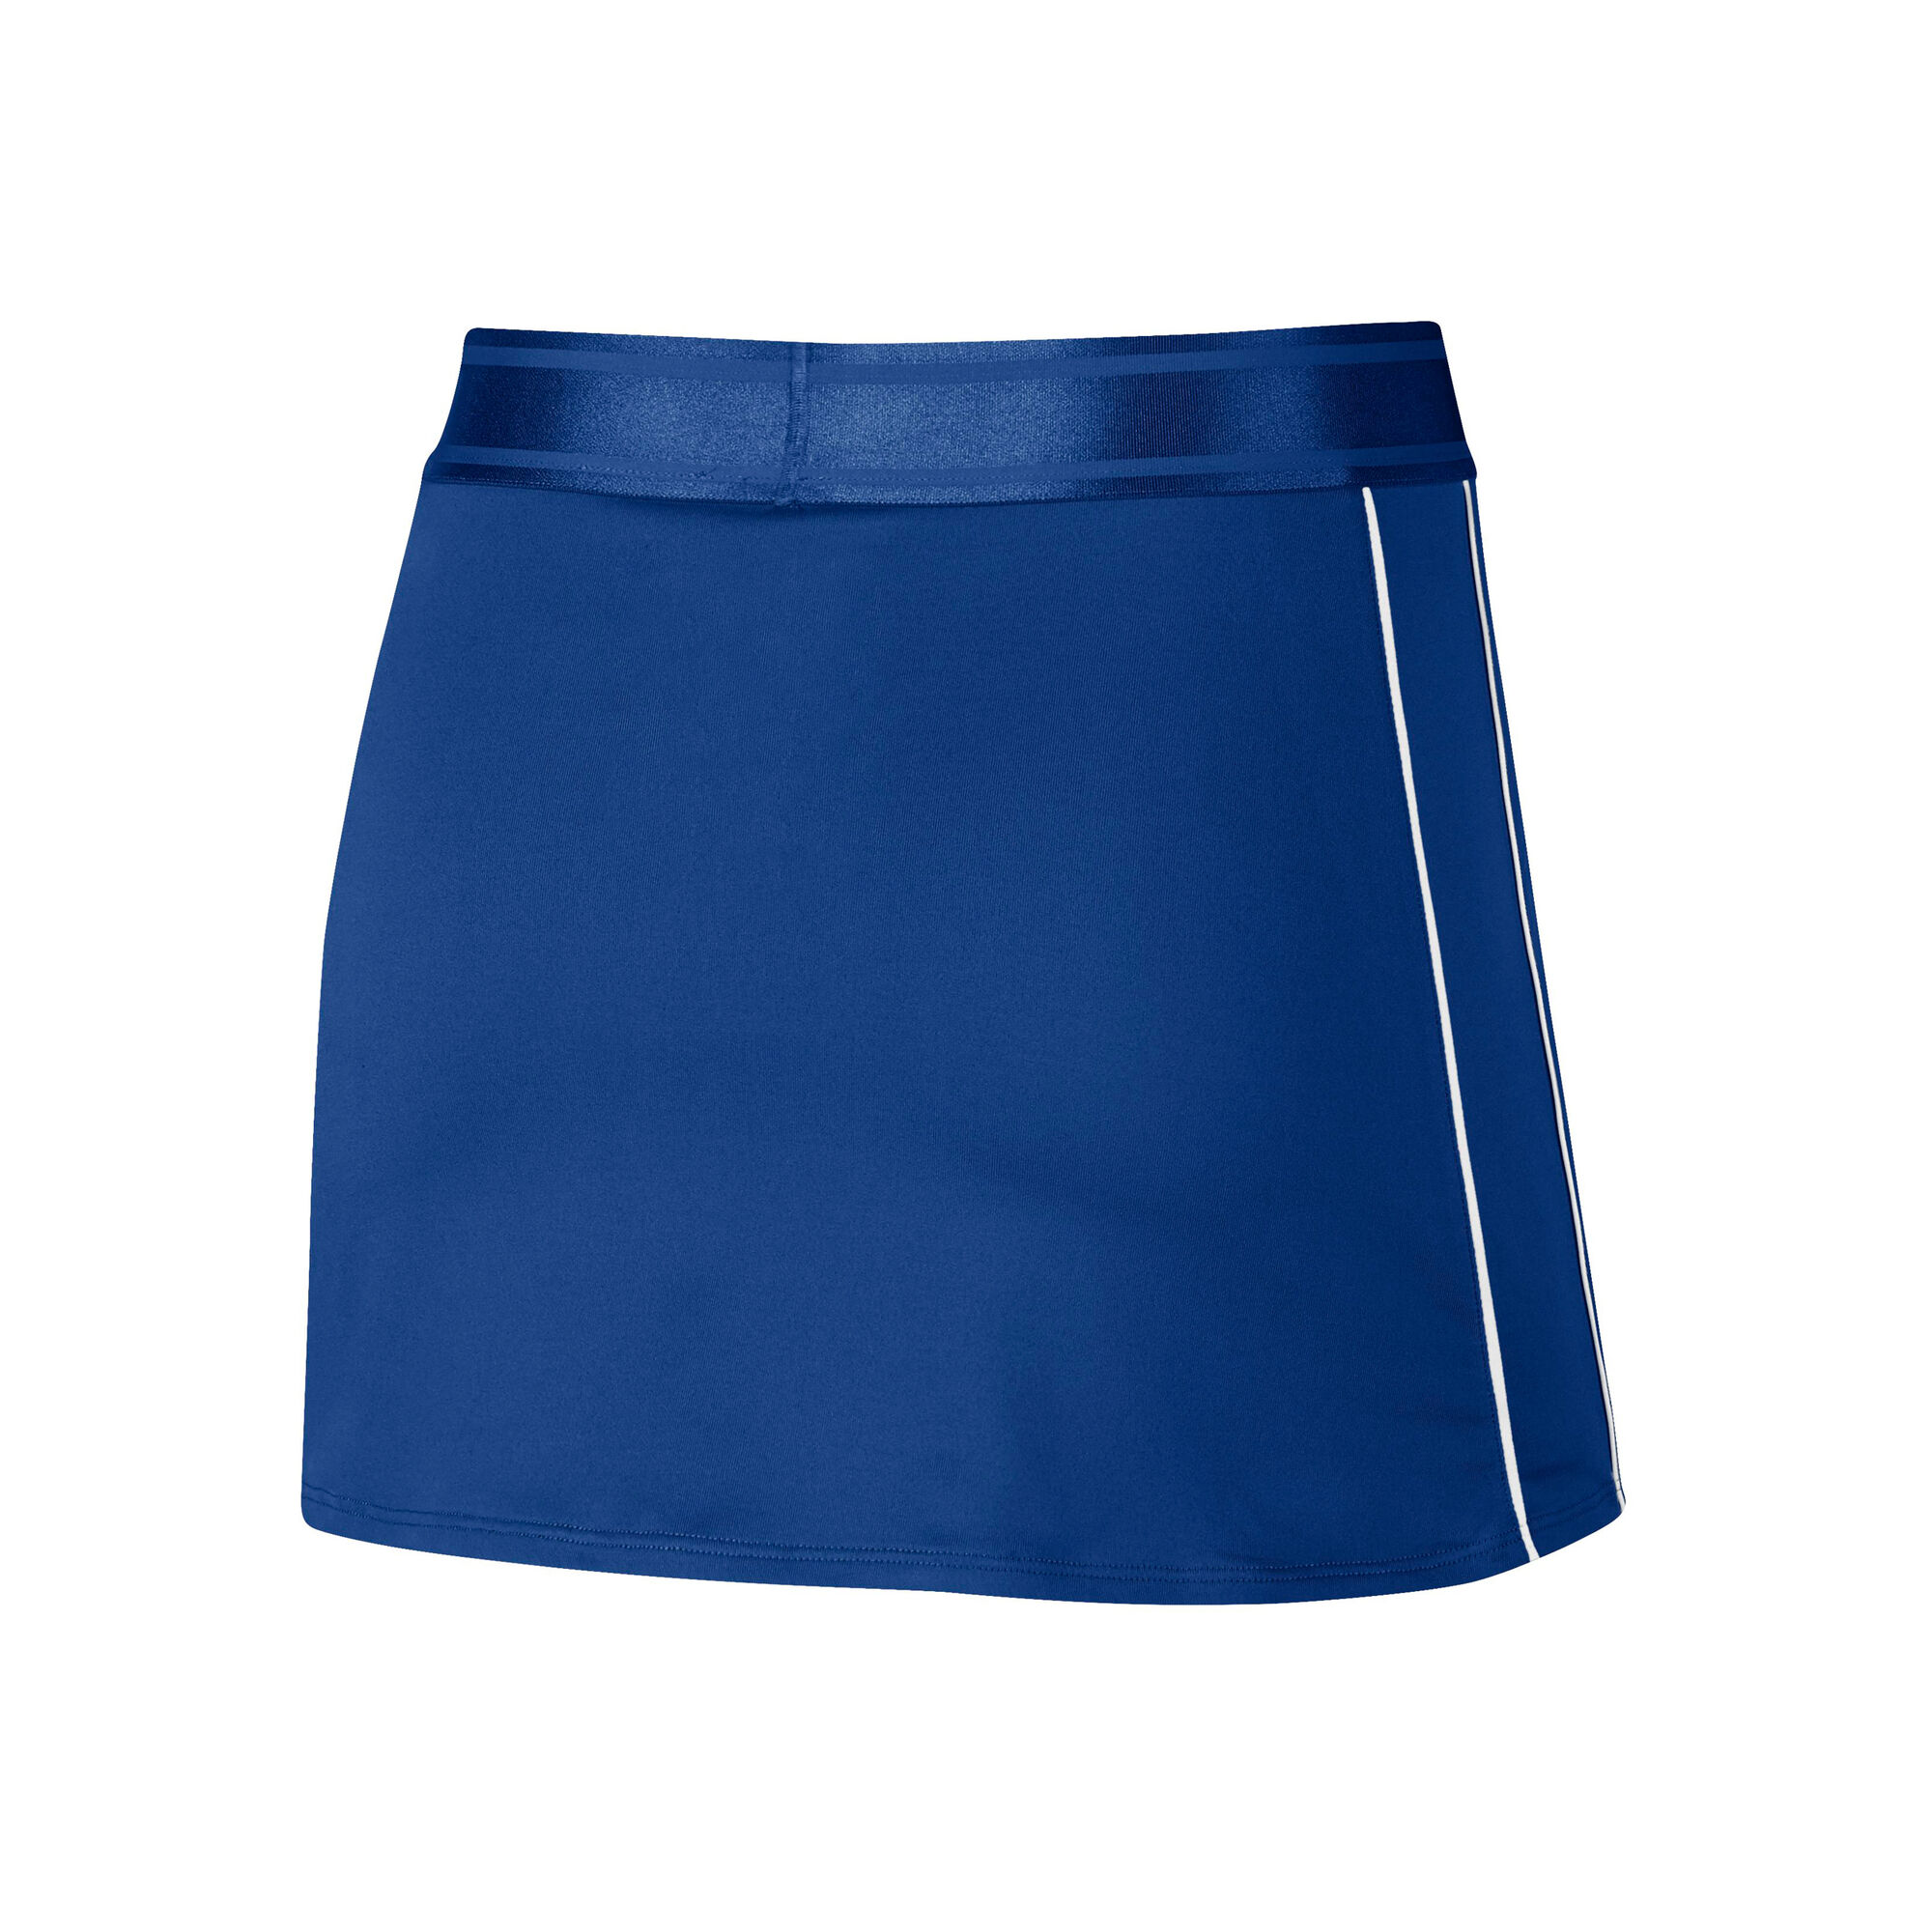 vermomming Phalanx donderdag buy Nike Court Dry Skirt Women - Blue, White online | Tennis-Point